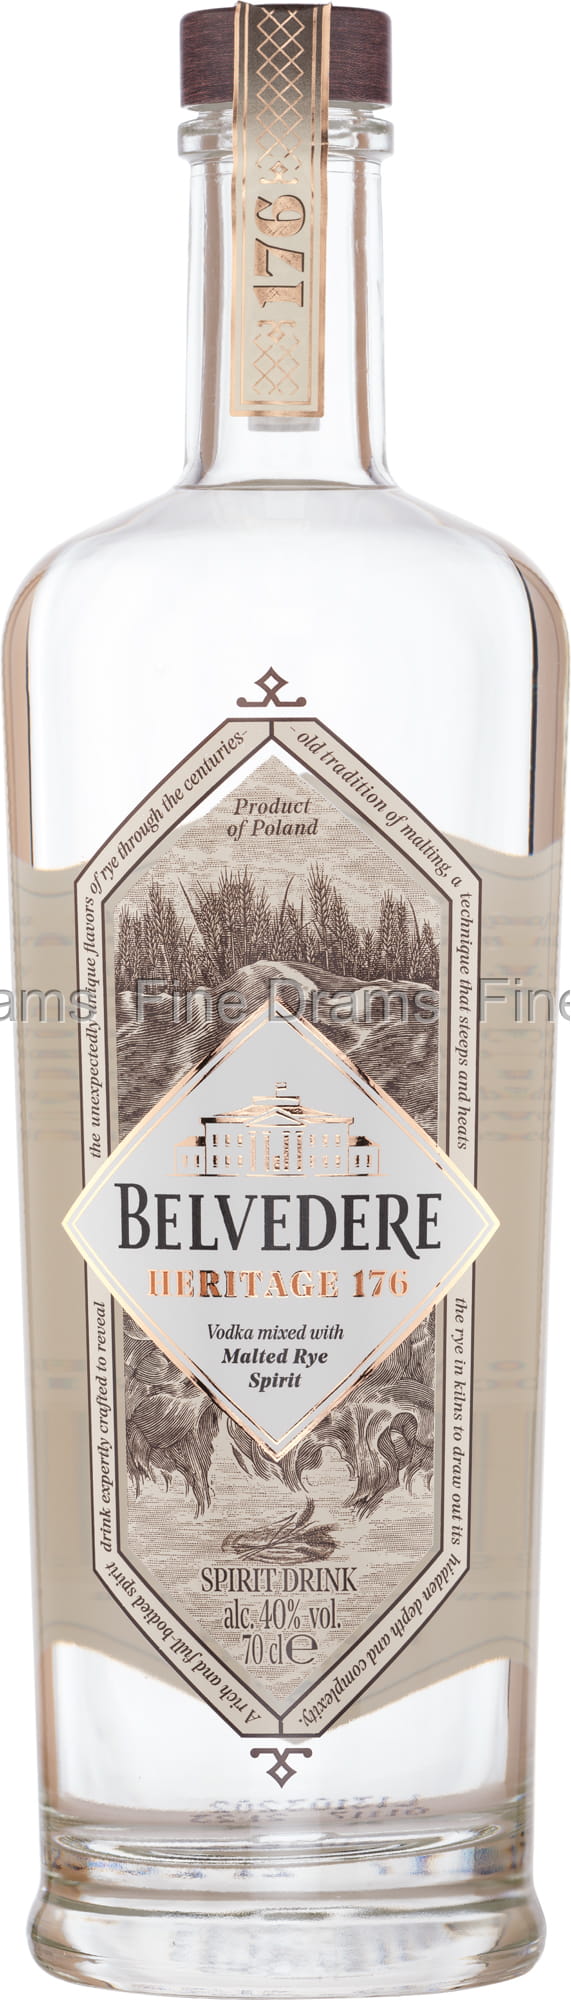 Vodka Belvedere  Heritage 176